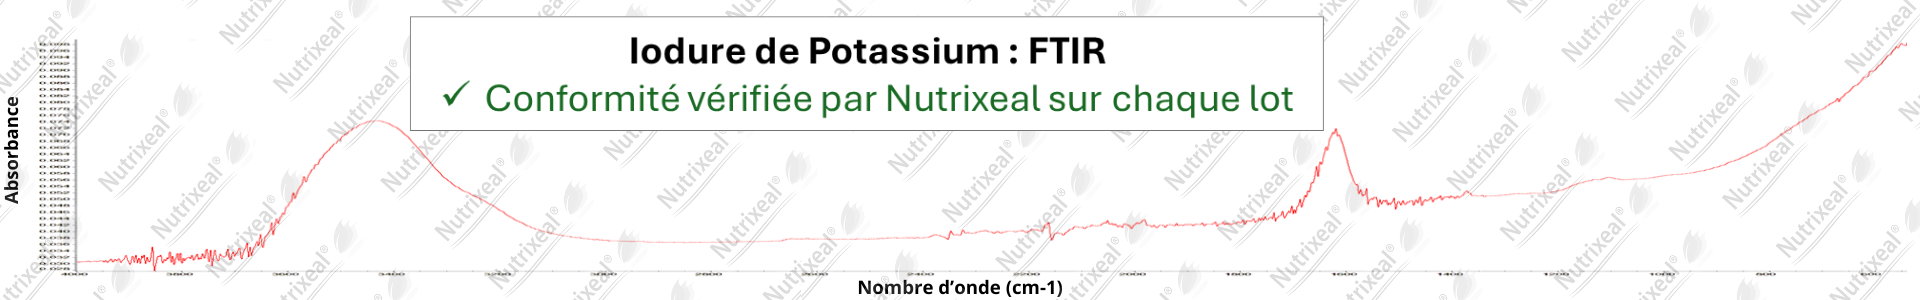 Spectre FTIR de l'iodure de potassium